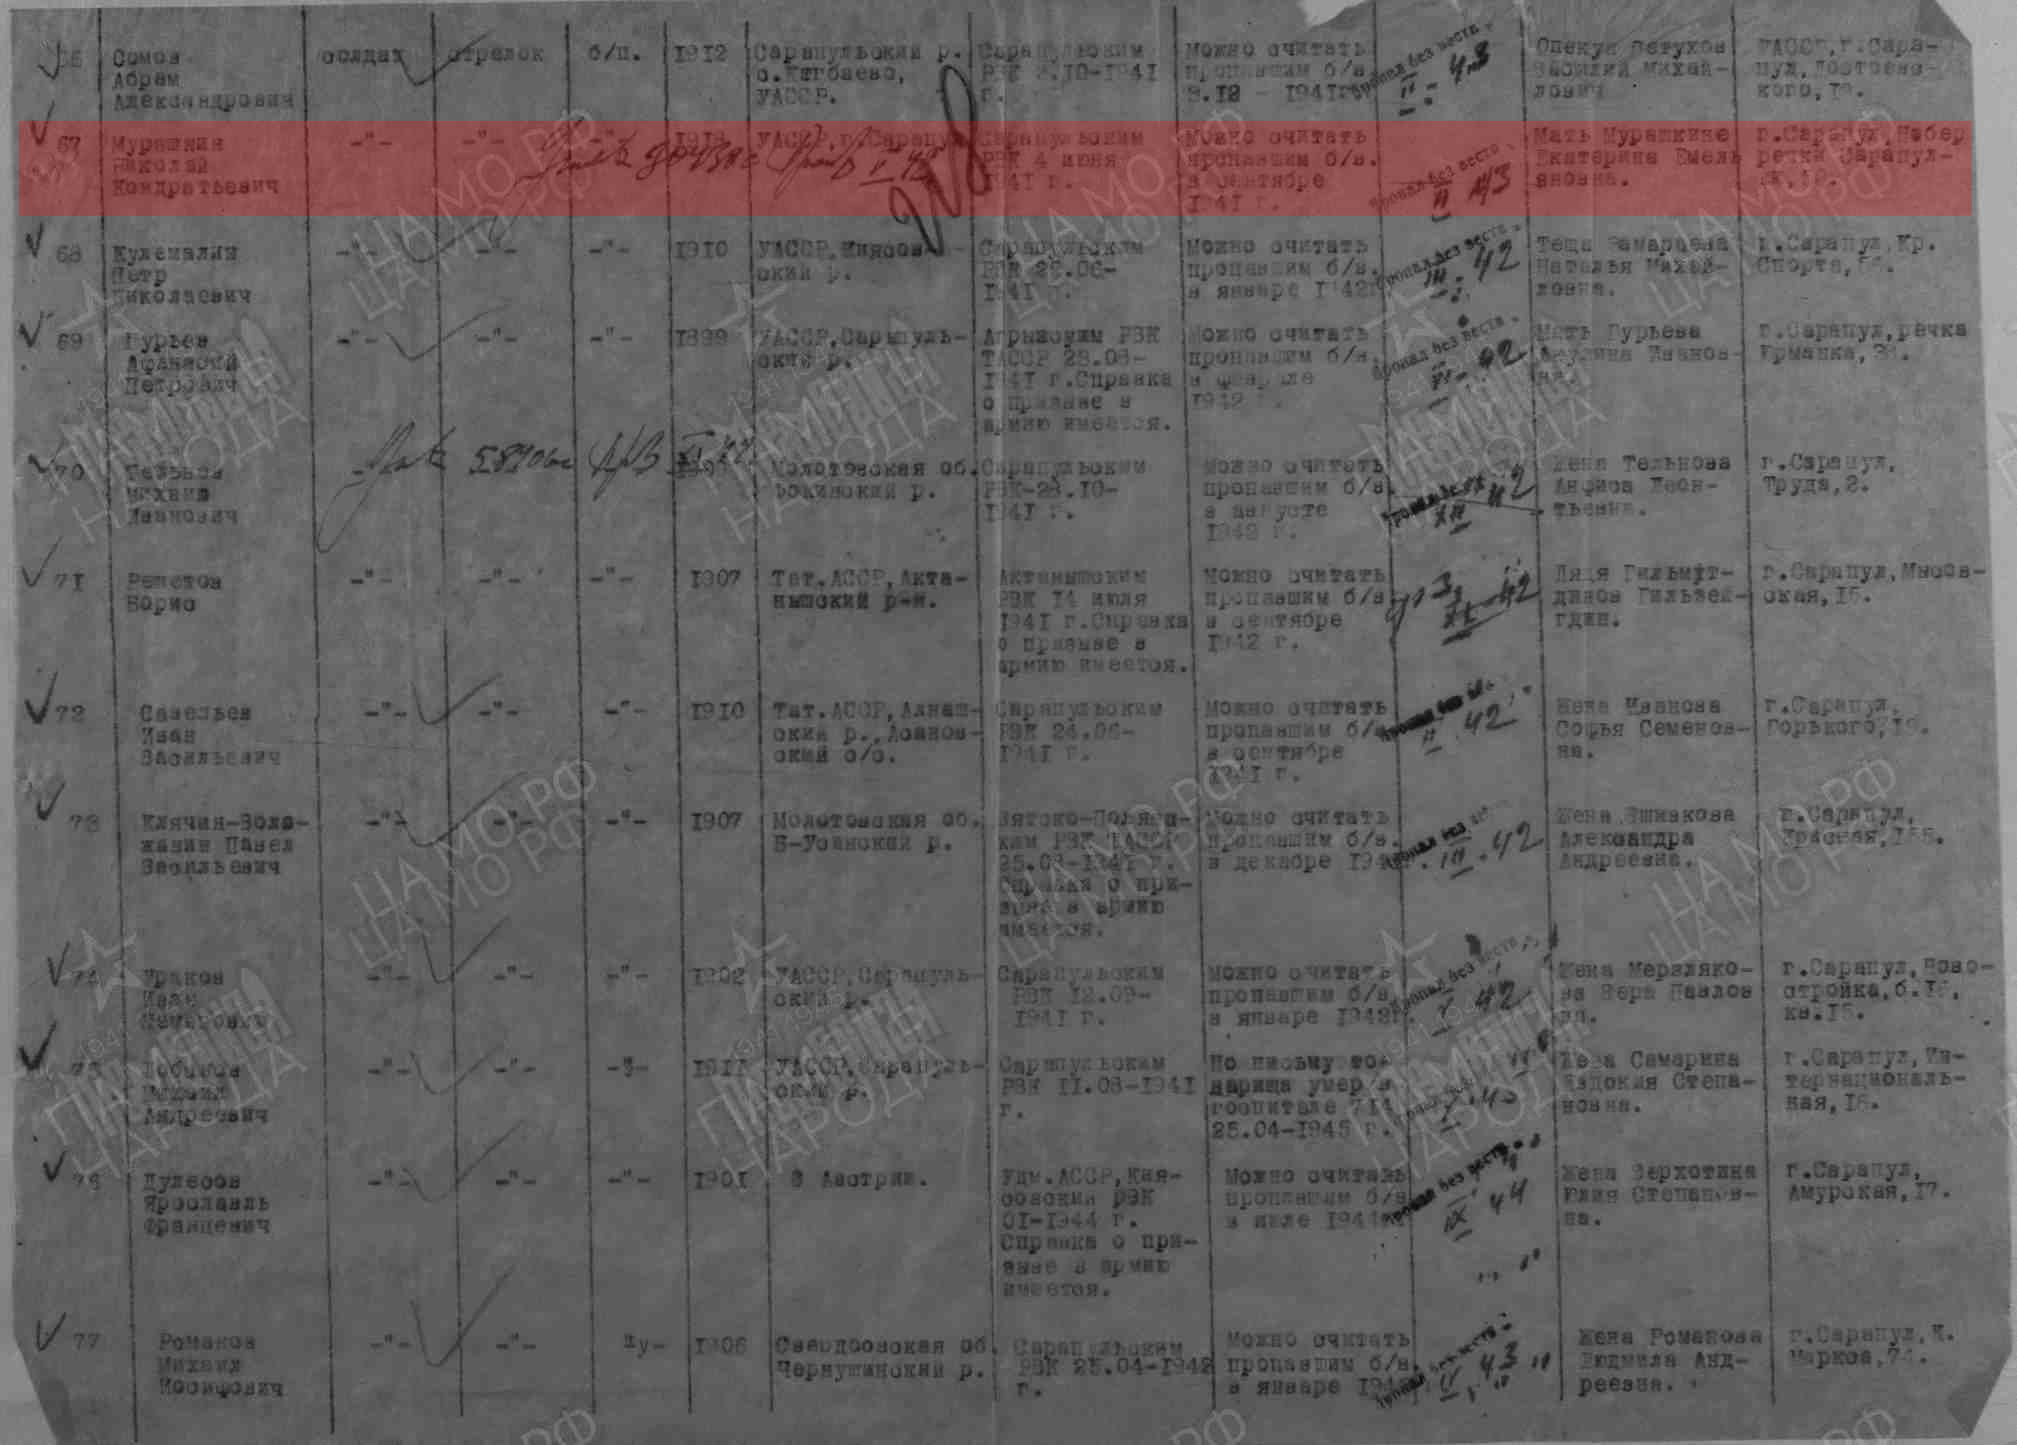 Лист донесения послевоенного периода, уточняющего потери, 05.08.1947